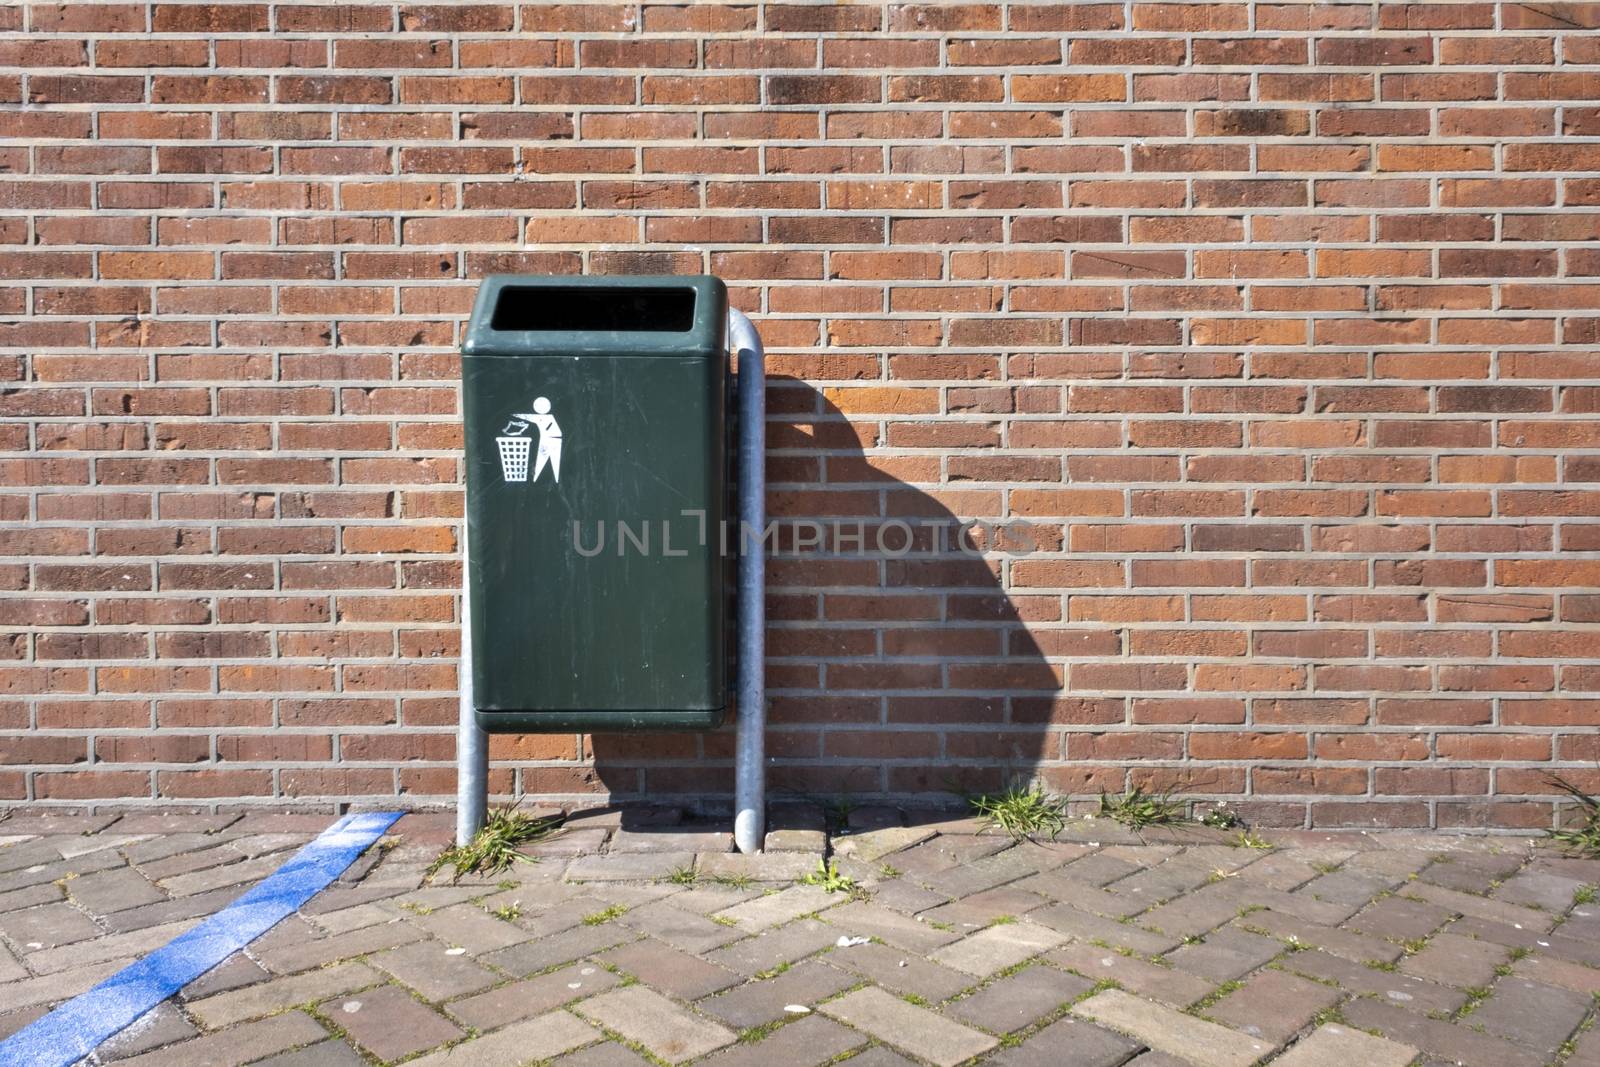 Modern green Metallic trash bin in a sunny urban environment